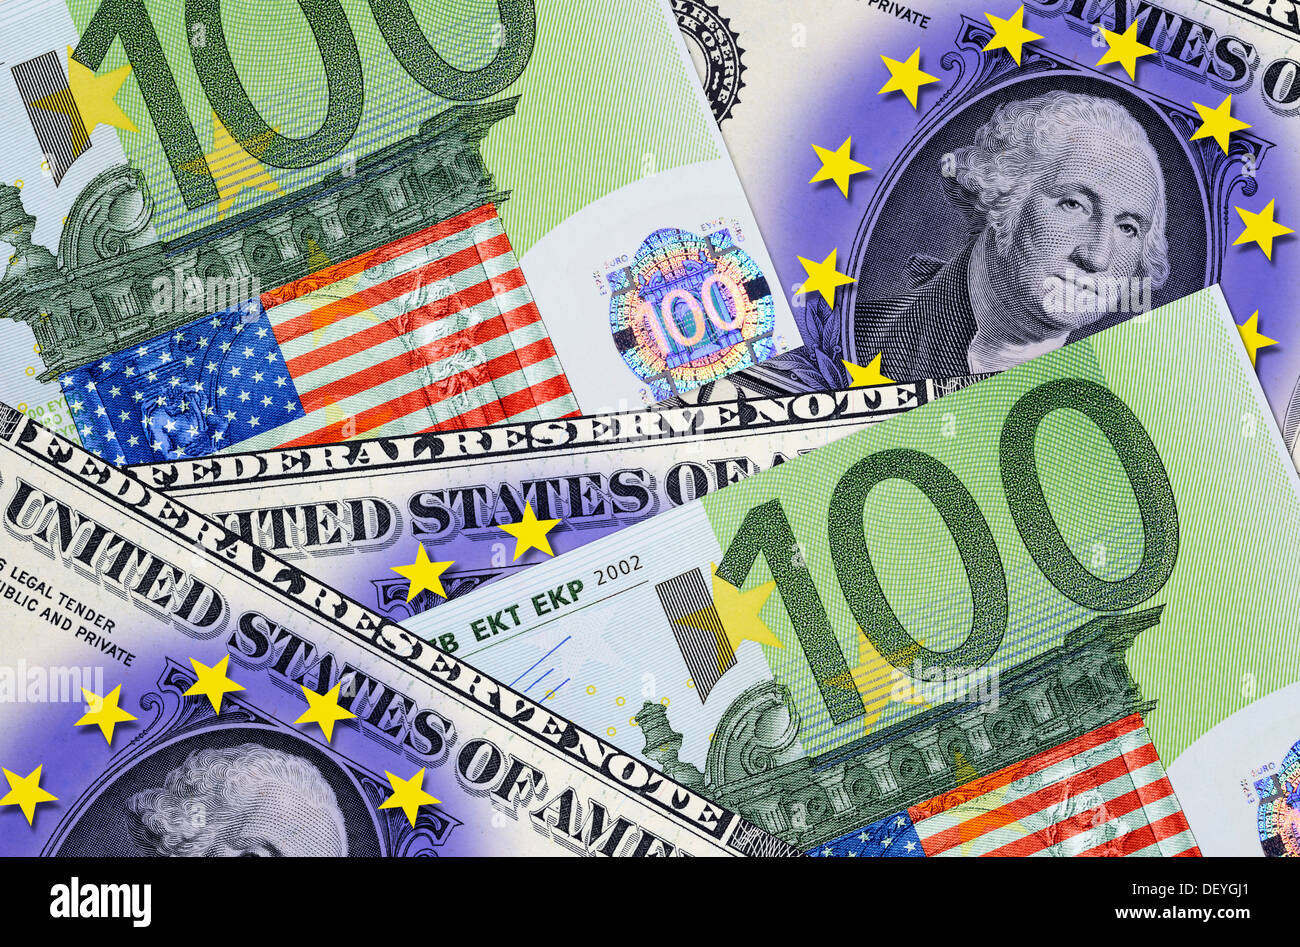 US-dollar avec les stars et eurols avec USA flag, une zone de commerce extérieur entre les USA et l'UE Banque D'Images